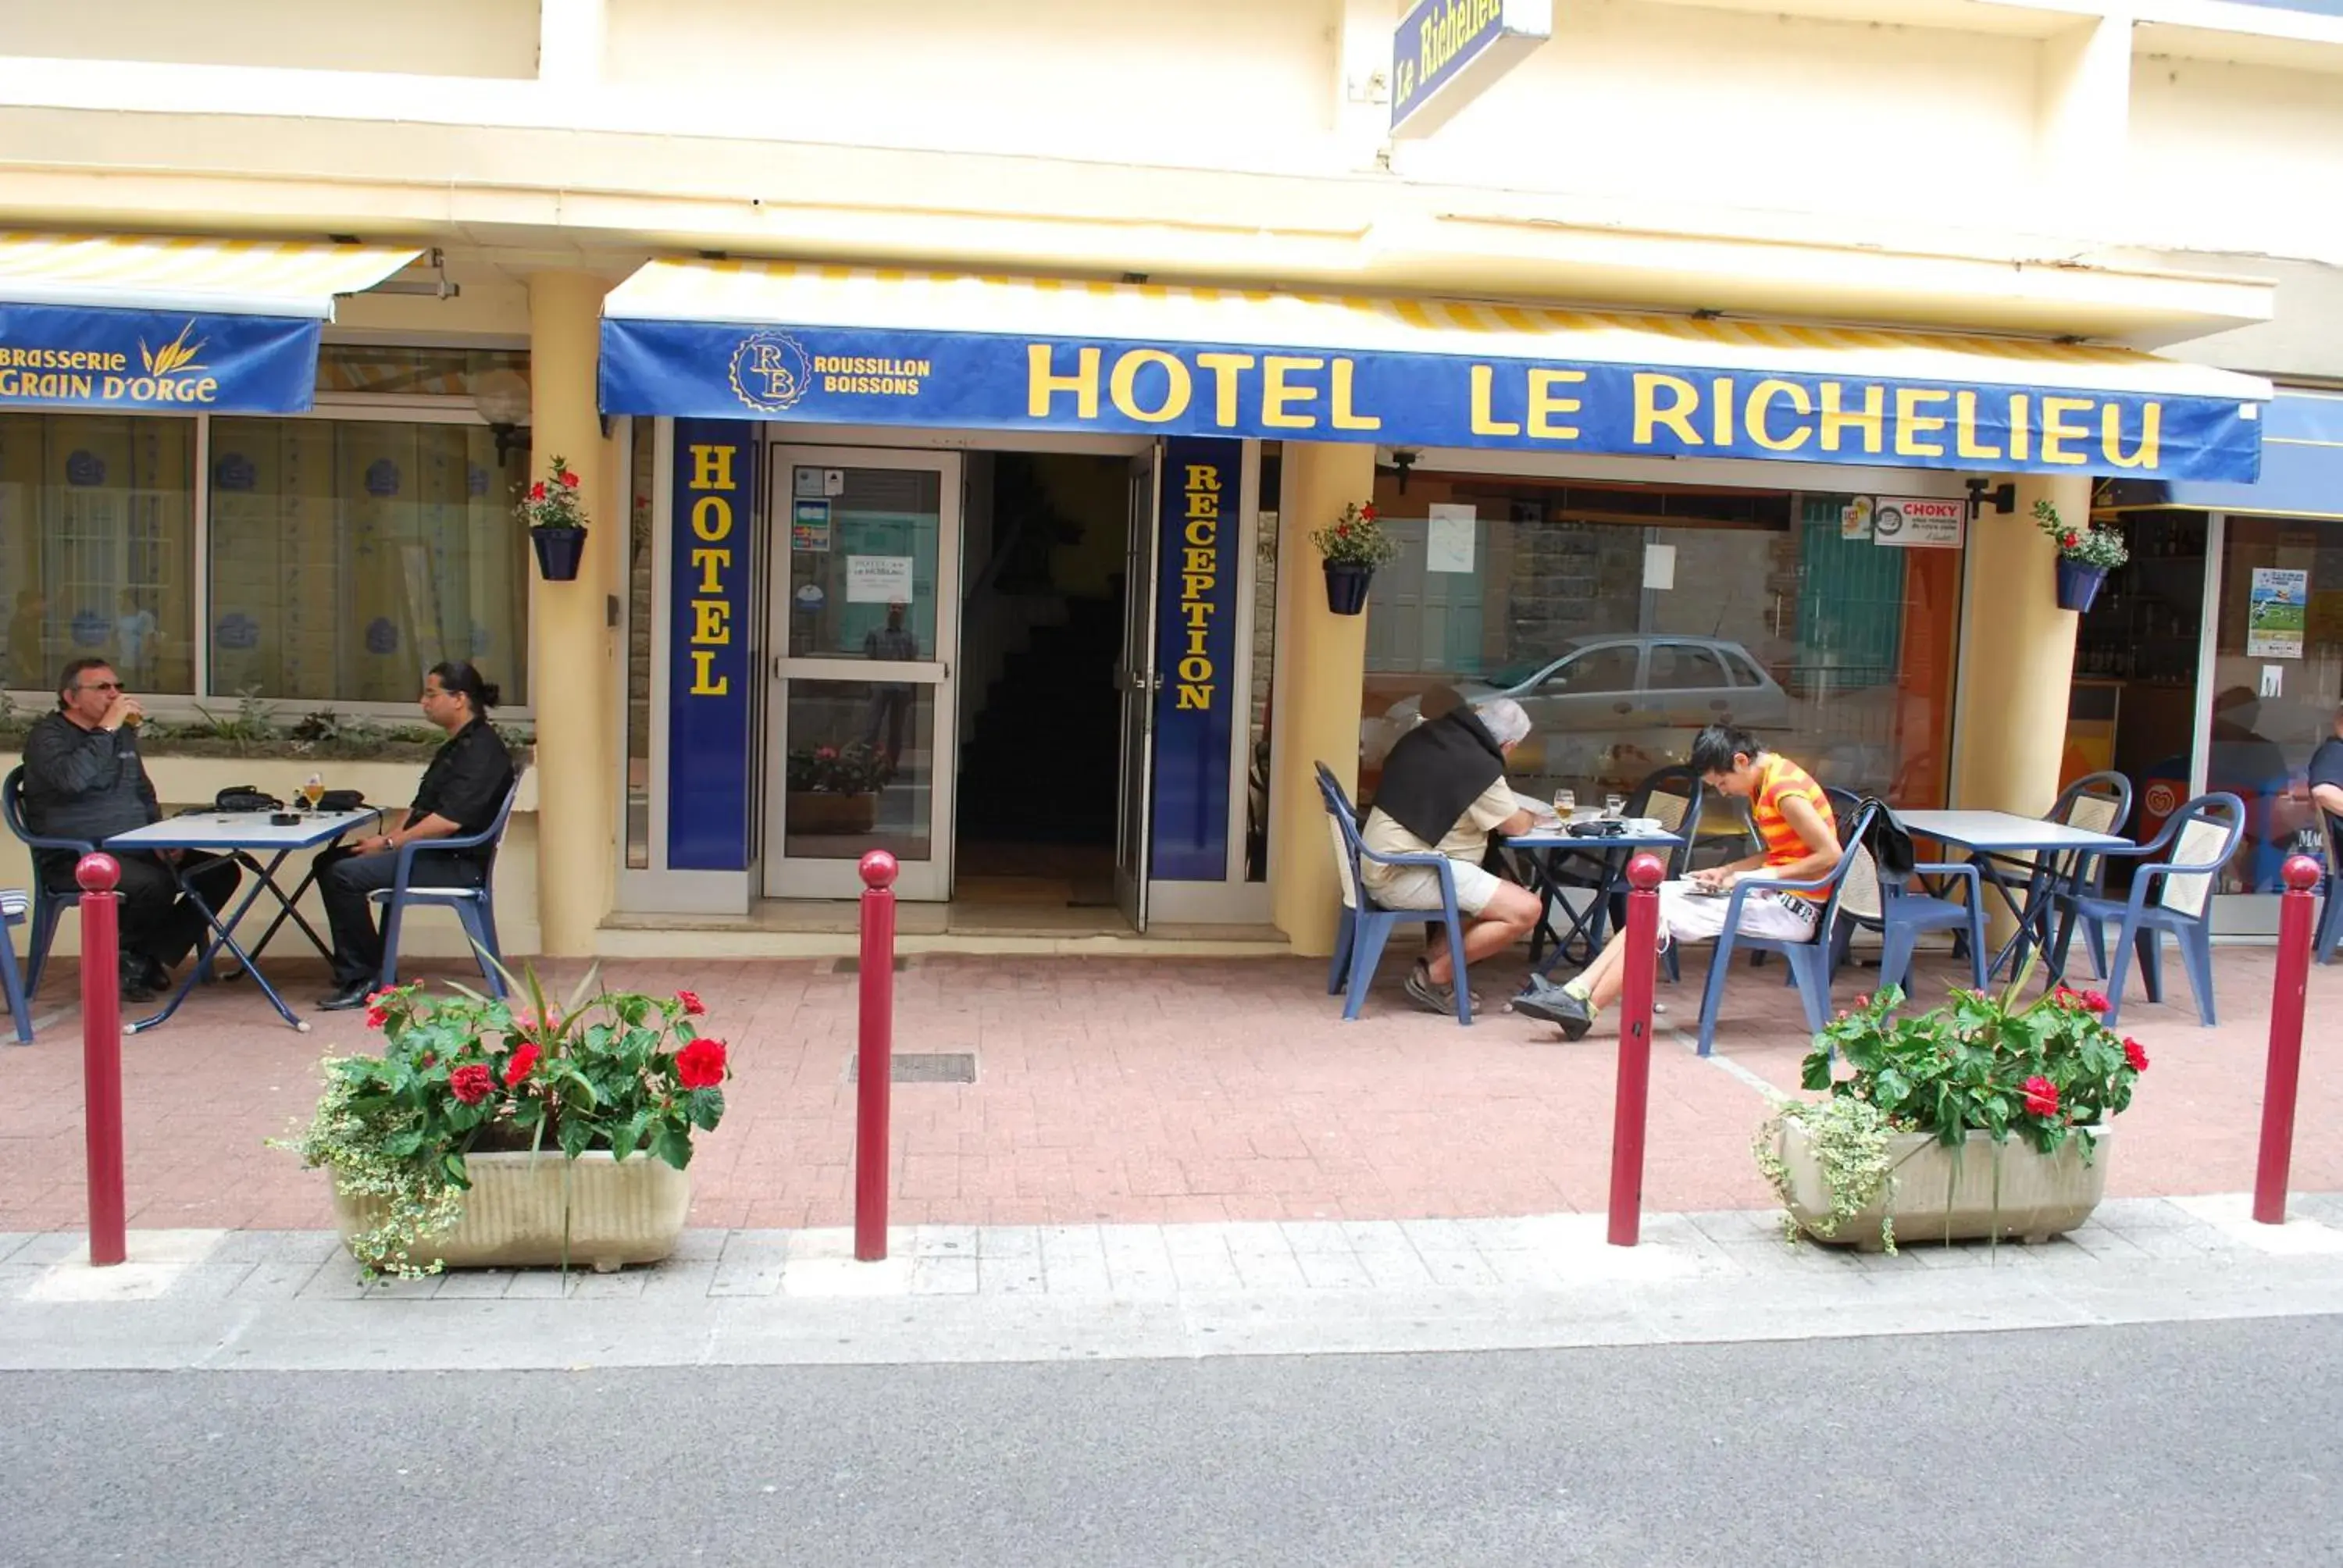 Facade/entrance in Le Richelieu